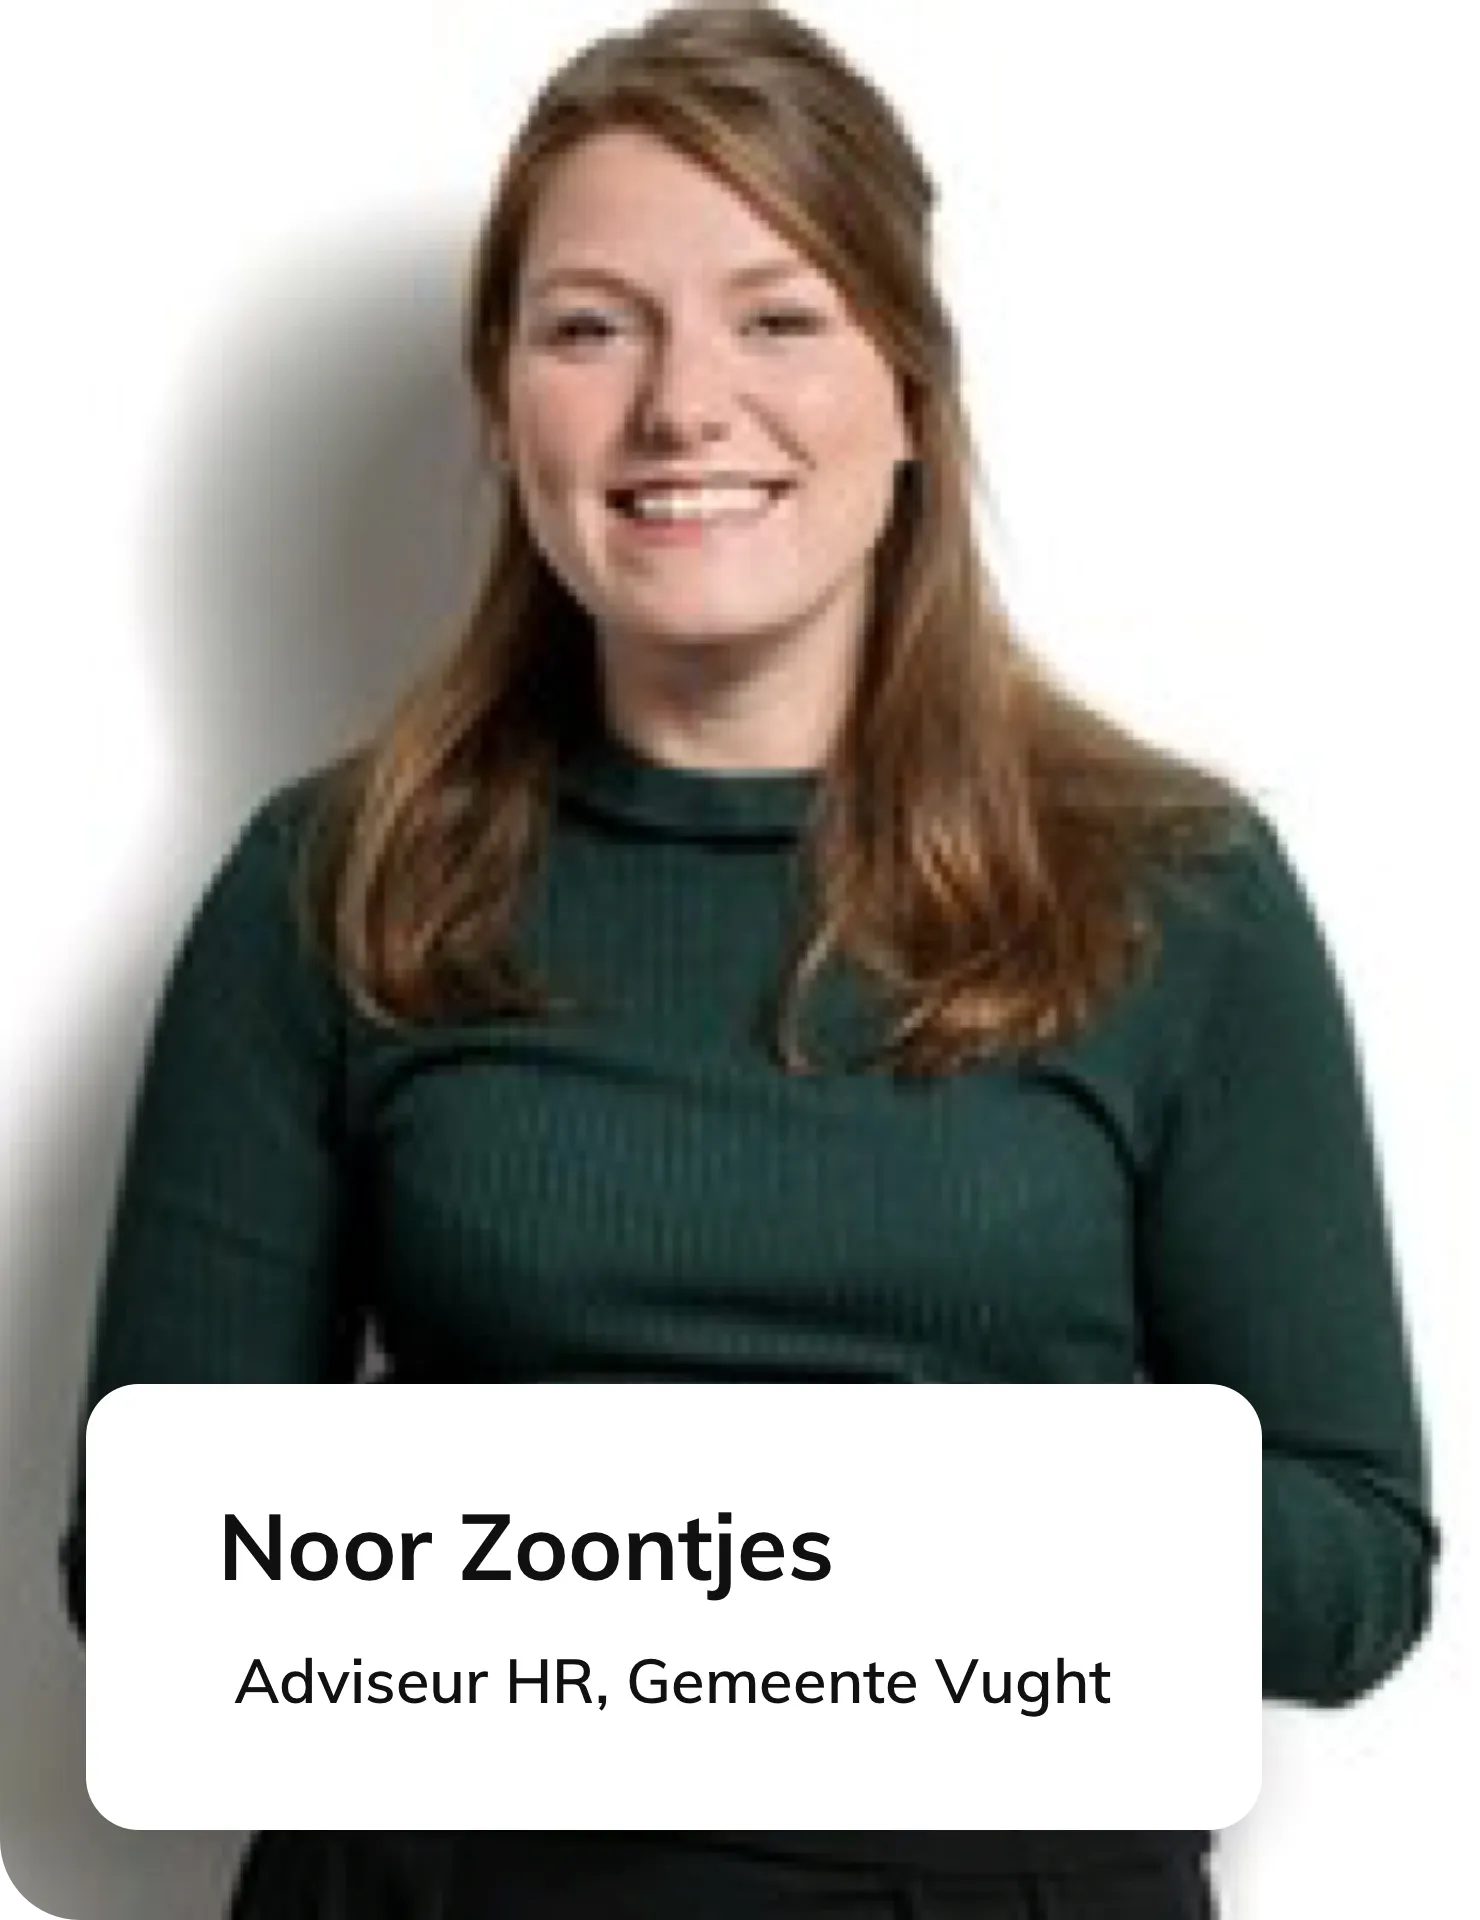 Noor Zoontjes, HR-Adviseur bij Gemeente Vught